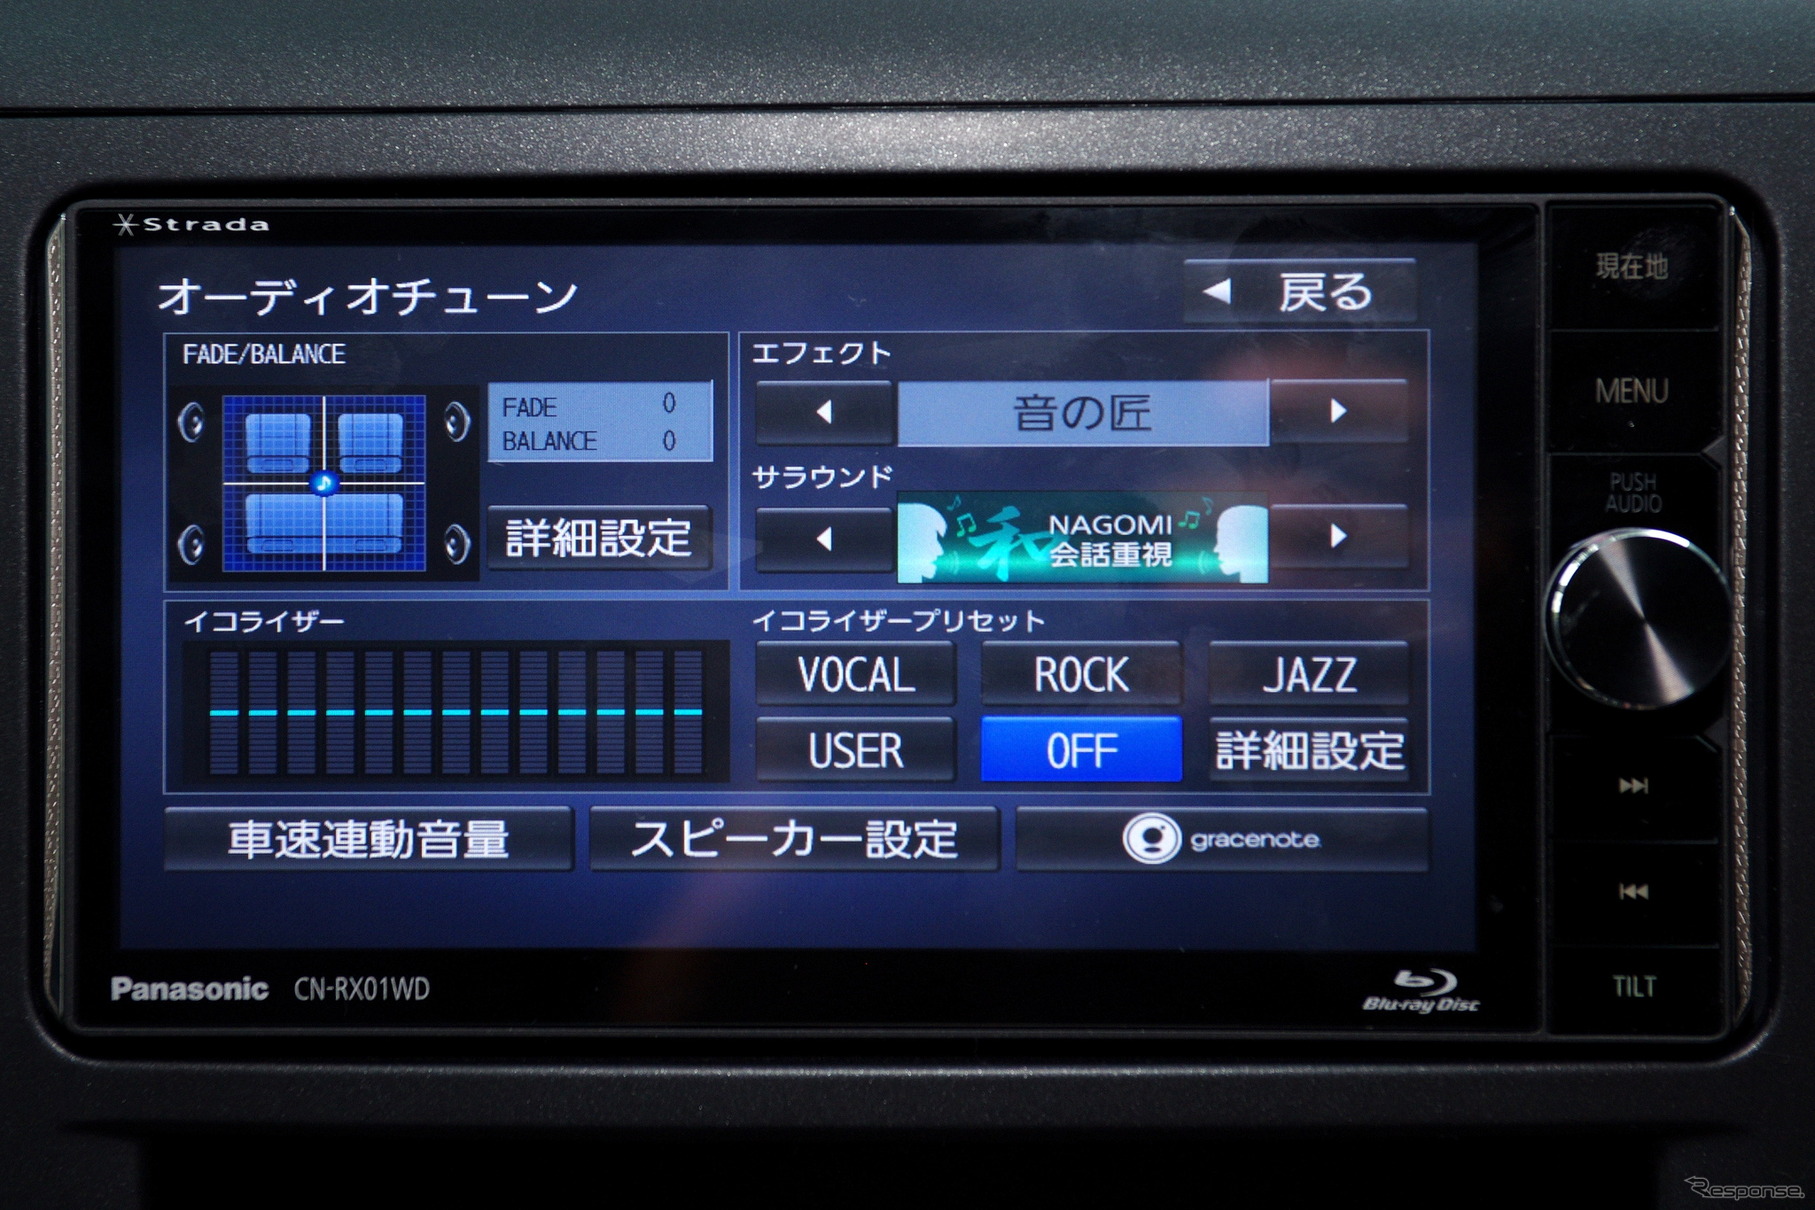 オーディオチューンは「エフェクト」の「音の匠」がリニューアルされた。「NAGOMI 会話重視」「KIWAMI 高域強調」「TAKUMI マスターサウンド」から選択できる